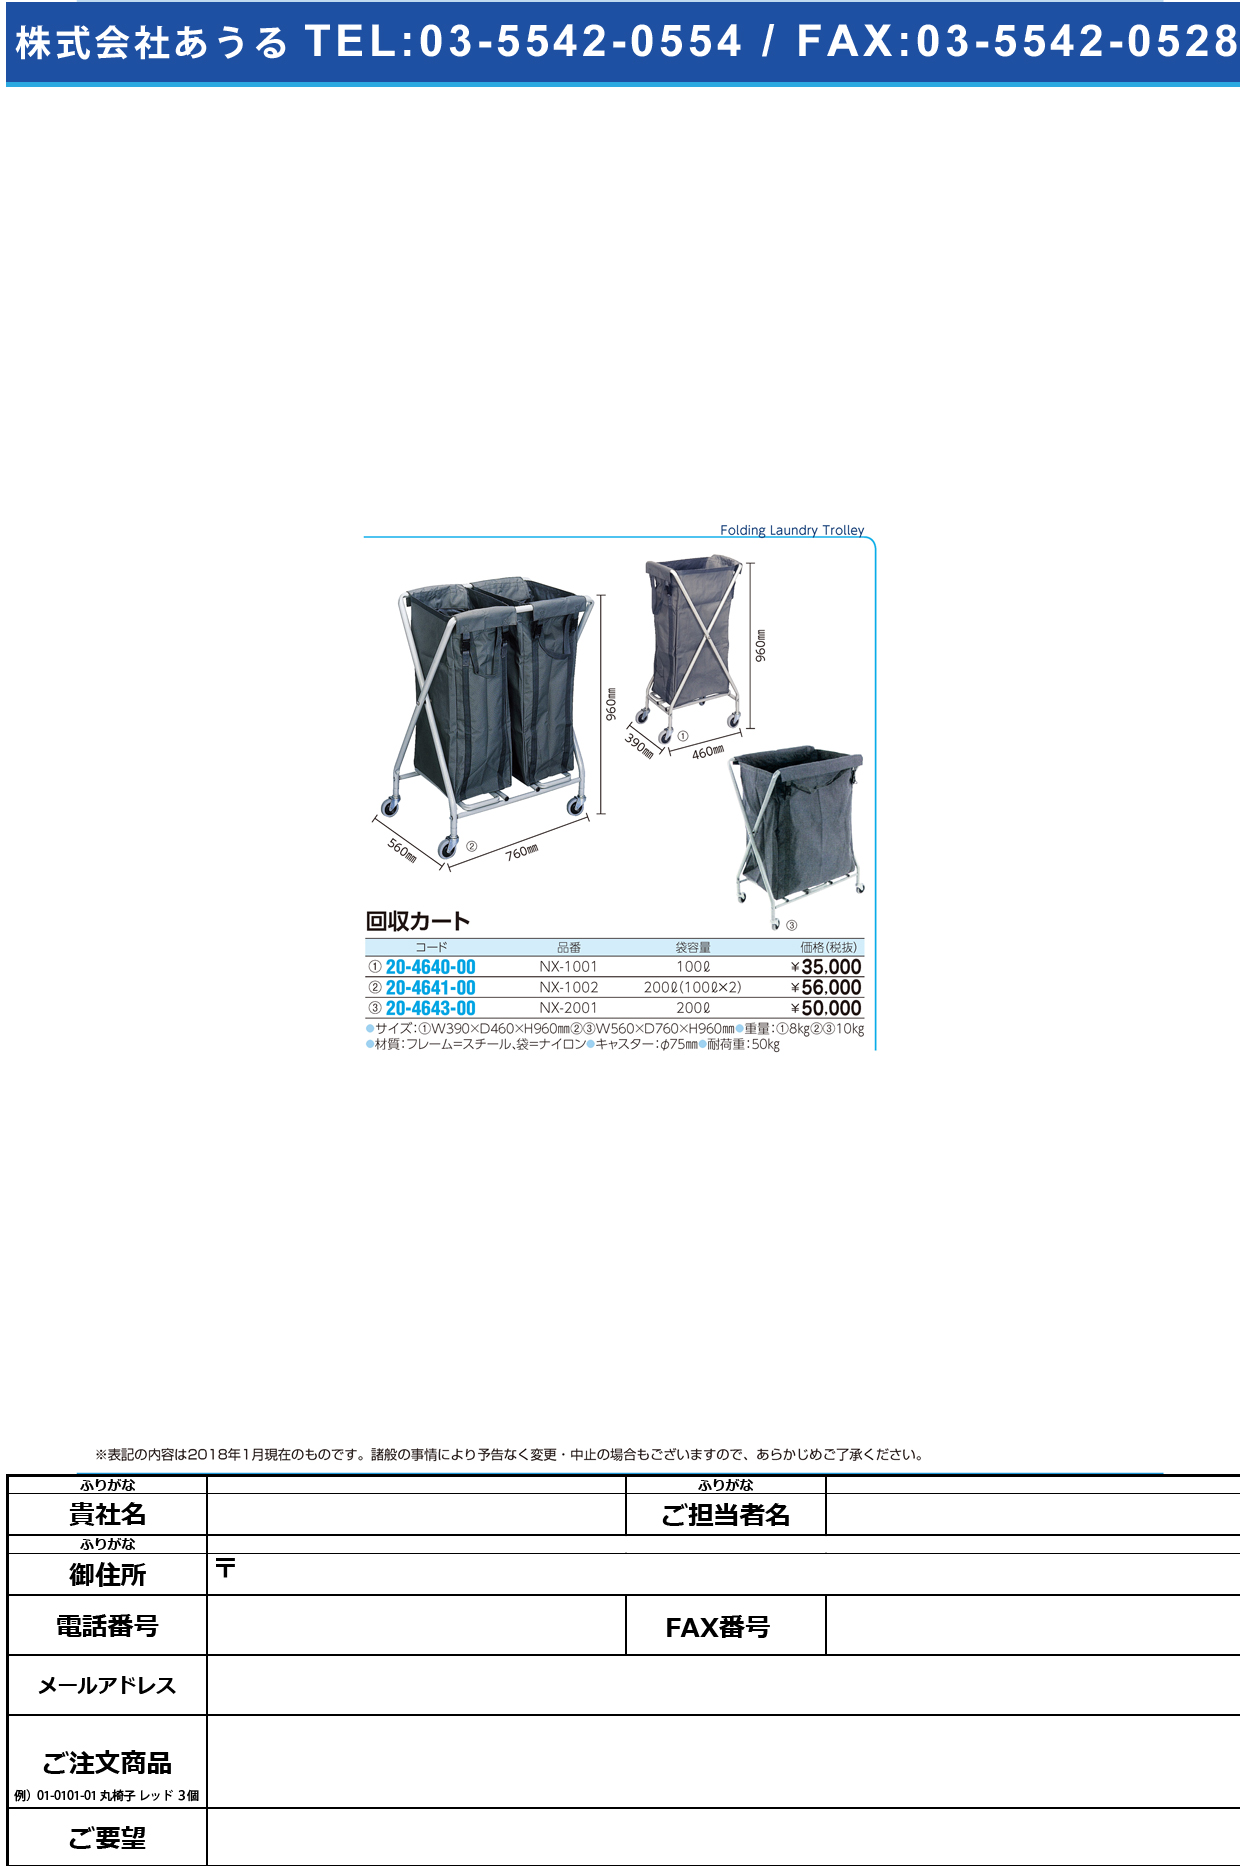 (20-4640-00)回収・リネンカート NX-1001 ｶｲｼｭｳﾘﾈﾝｶｰﾄ(金沢車輛)【1台単位】【2018年カタログ商品】